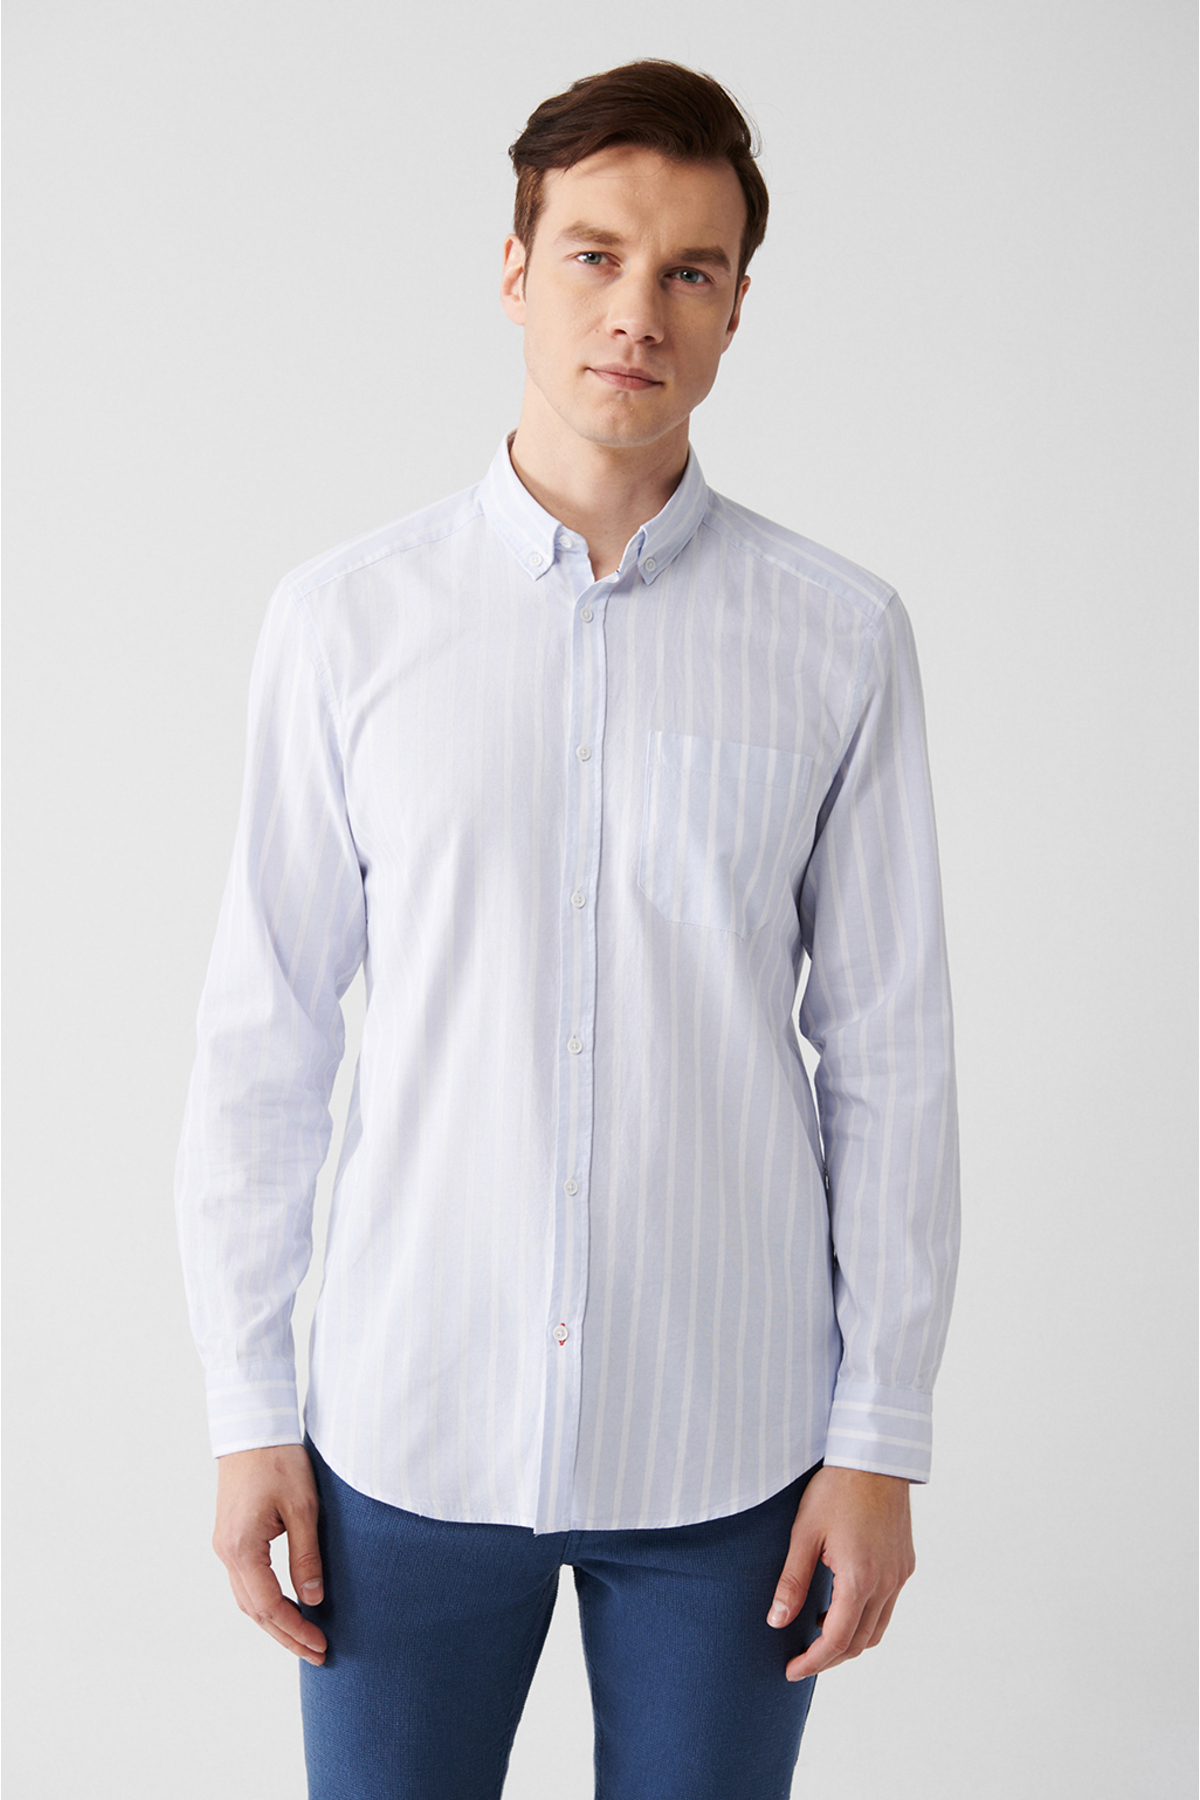 Avva Men's Light Blue 100% Cotton Oxford Buttoned Collar Striped Standard Fit Regular Fit Shirt